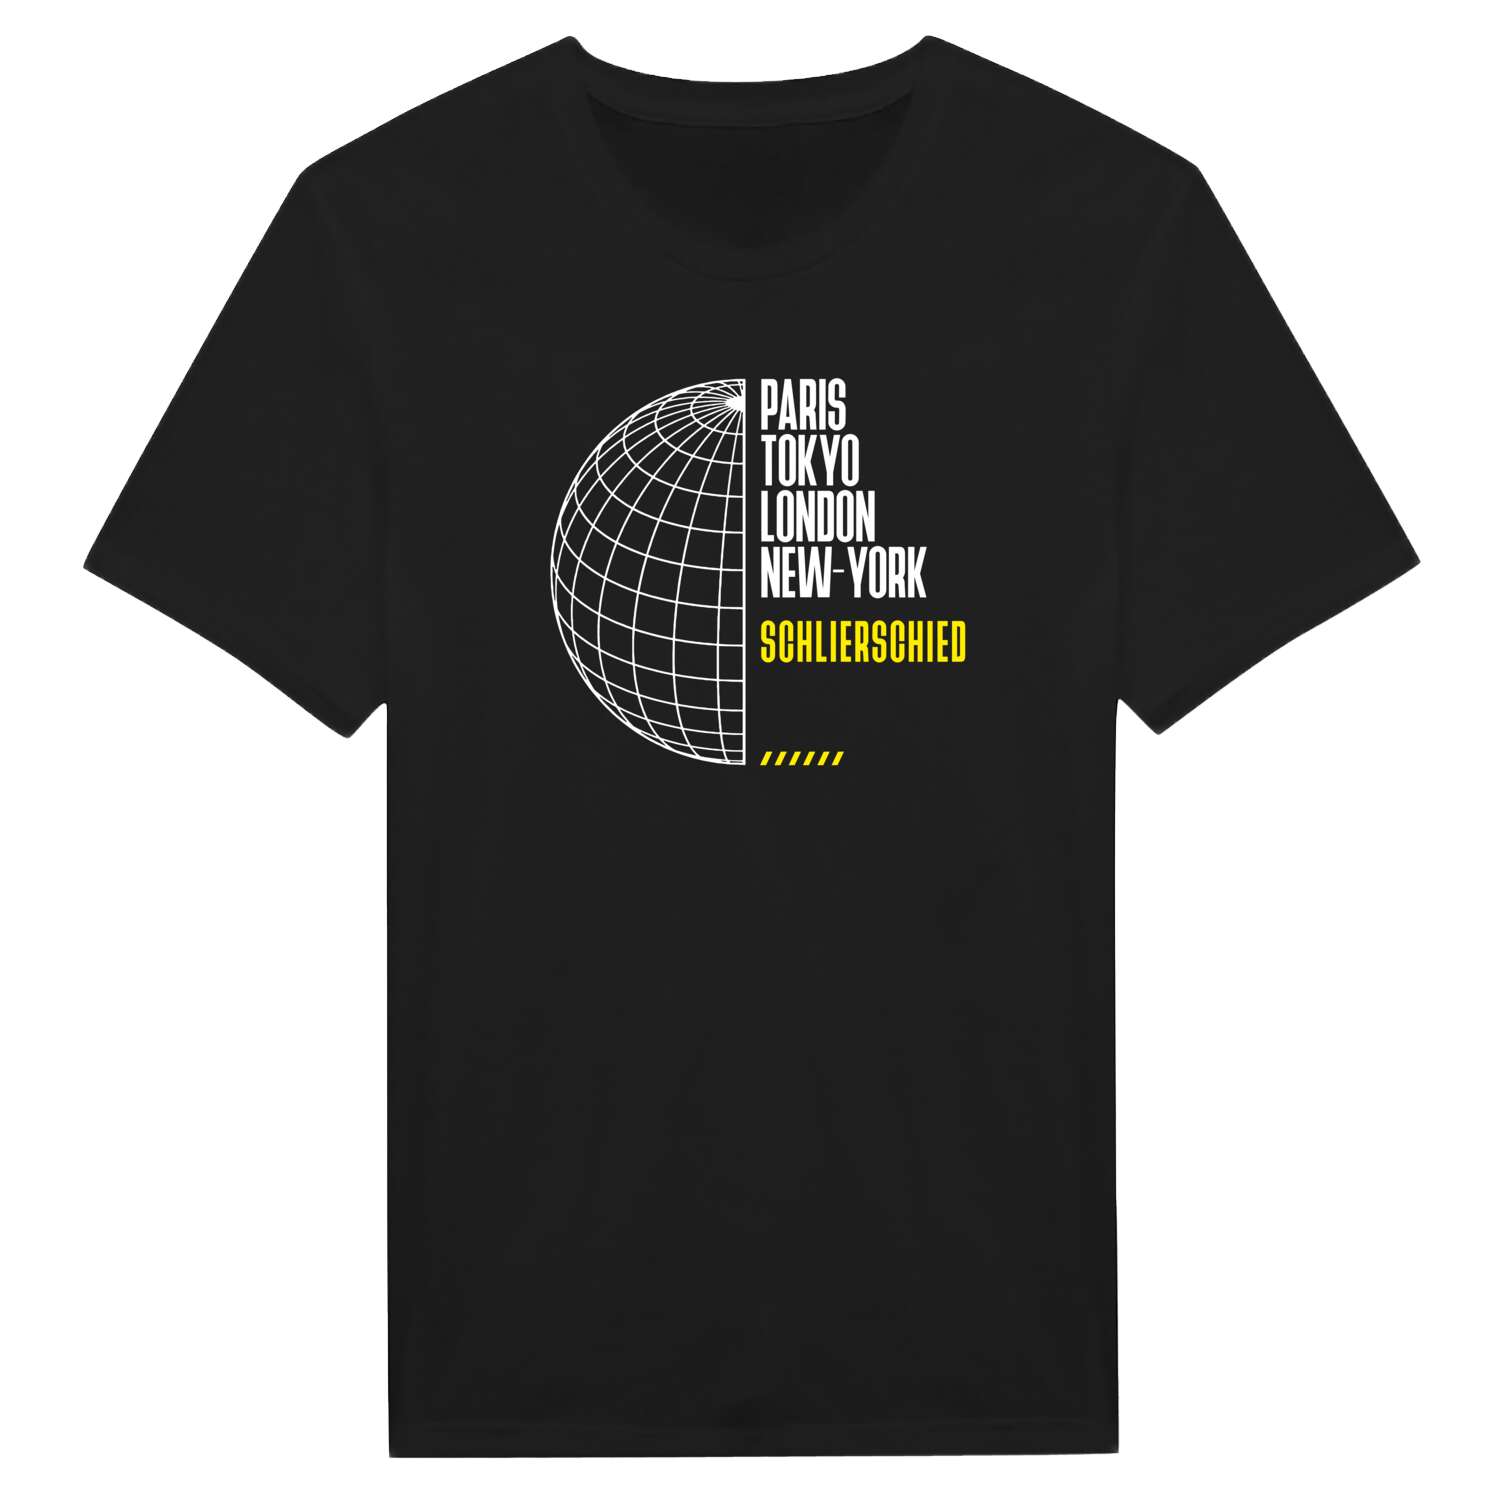 Schlierschied T-Shirt »Paris Tokyo London«